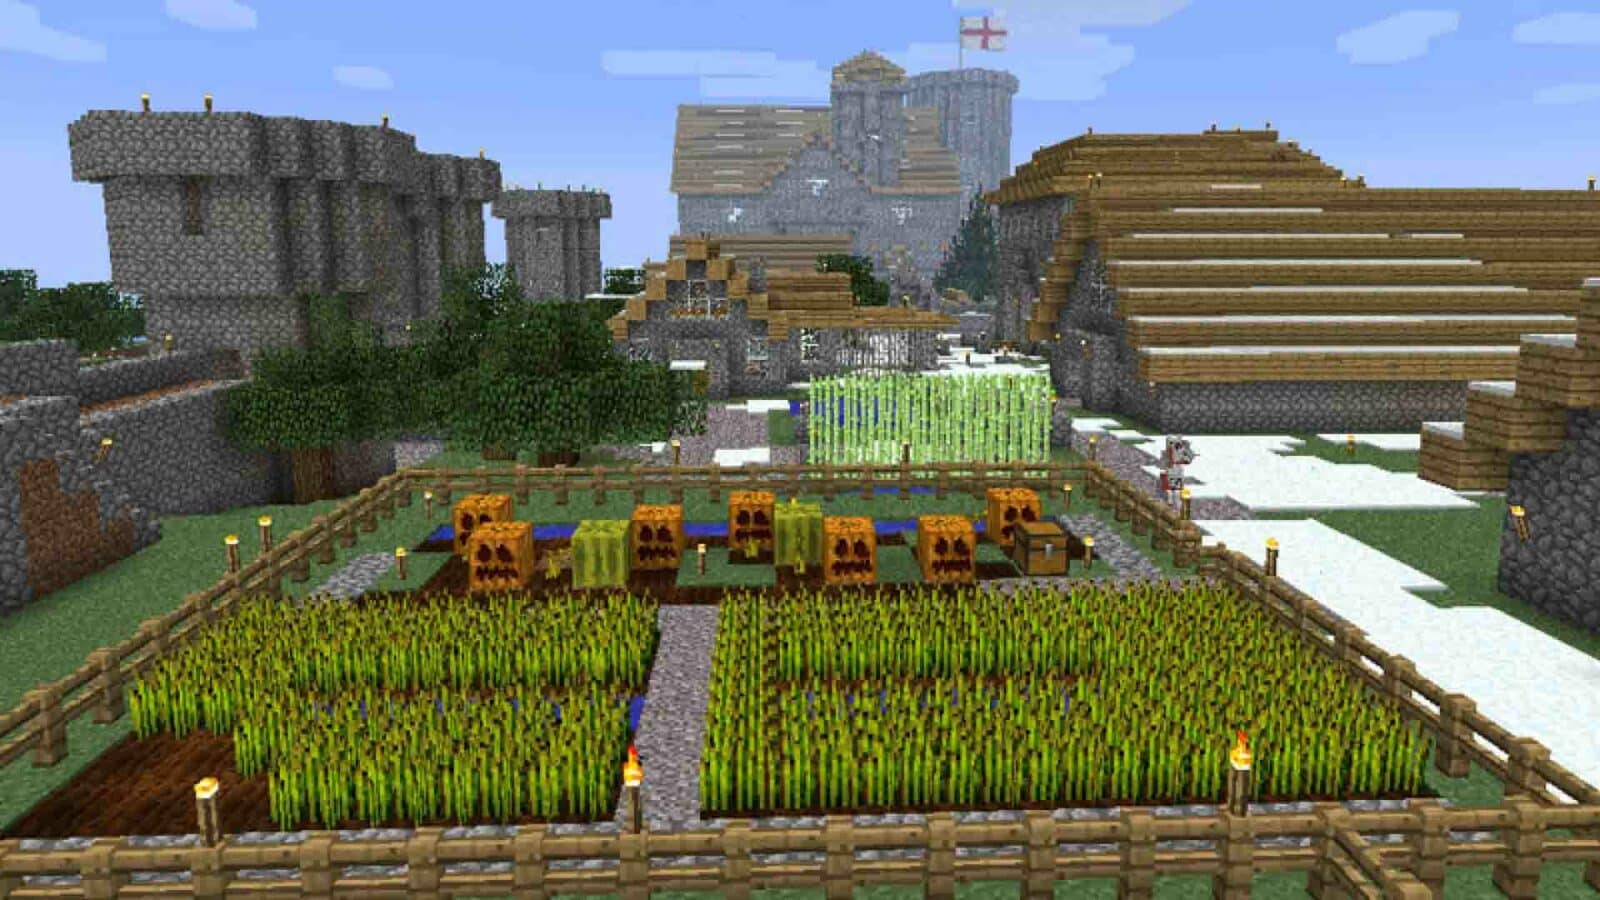 สวนอันเขียวขจีที่มีต้นไม้สูงและตึกระฟ้าสูงตระหง่านตั้งอยู่ในเมืองกลางแจ้ง ล้อมรอบด้วยท้องฟ้าสดใสที่แต่งแต้มด้วยปุยเมฆใน Minecraft